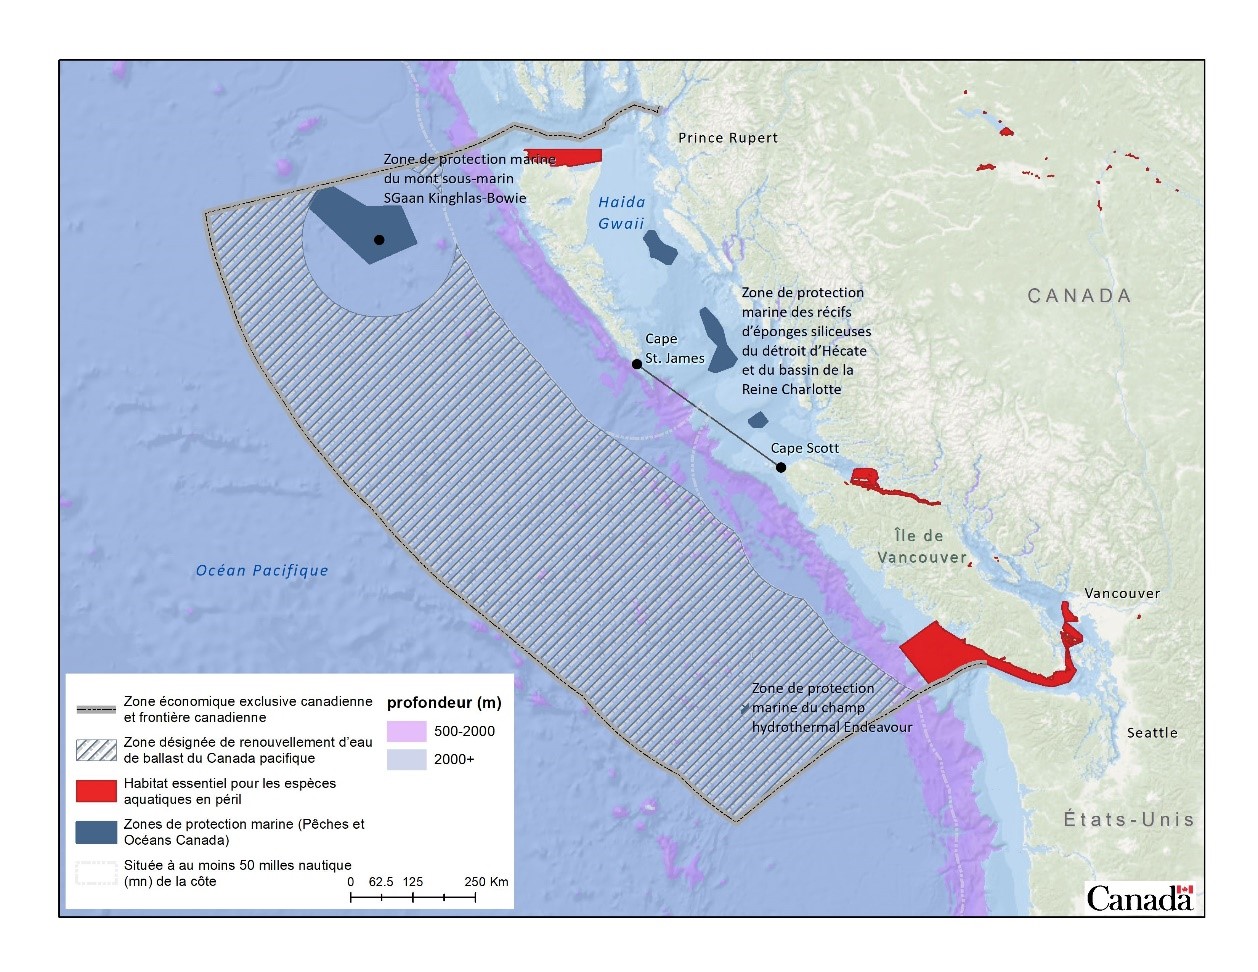 Figure 3. Zone désignée de renouvellement de ballast dans l’ouest du Canada